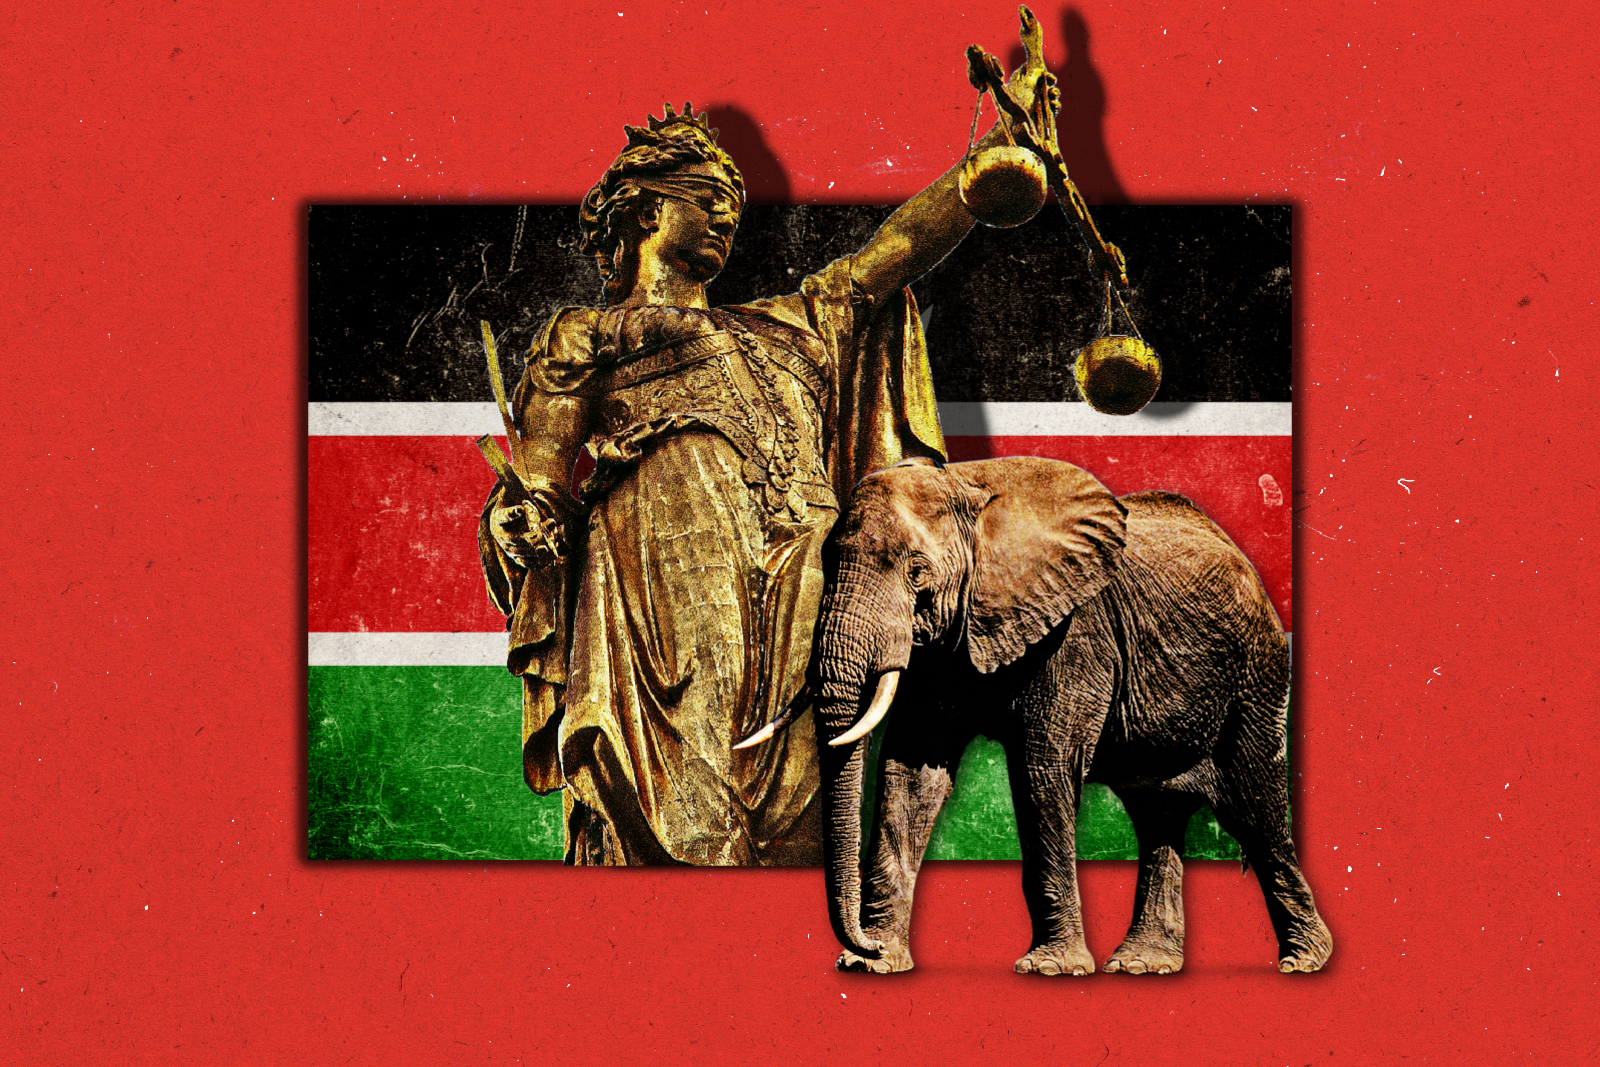 Kenya ivory trade